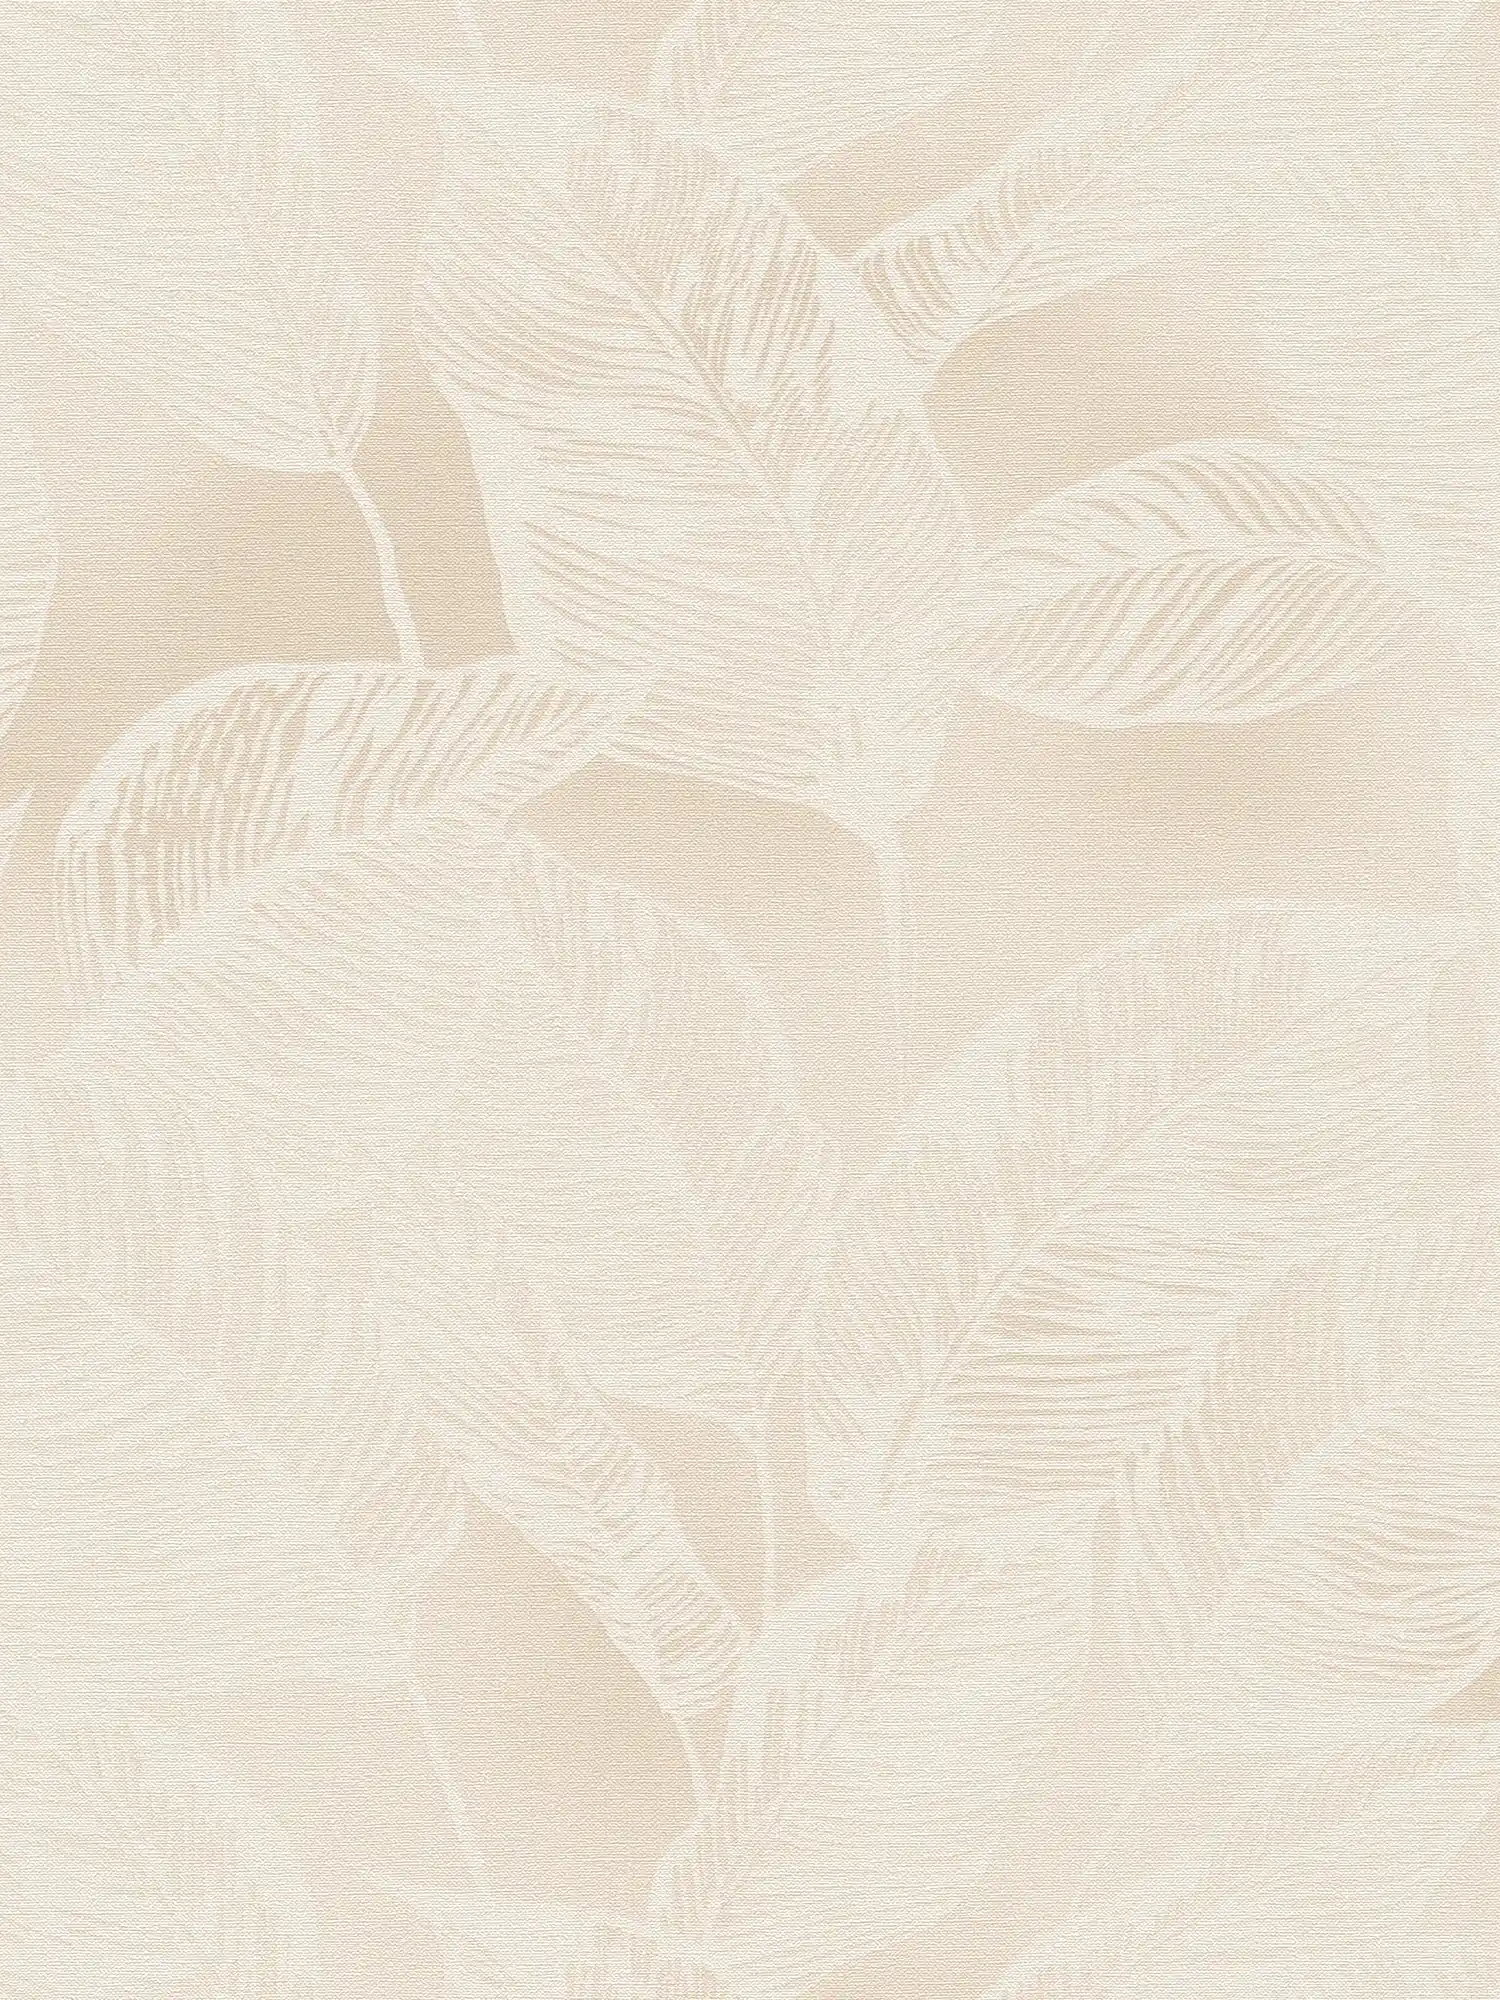 Blättermuster Vliestapete PVC-frei – Beige, Weiß
